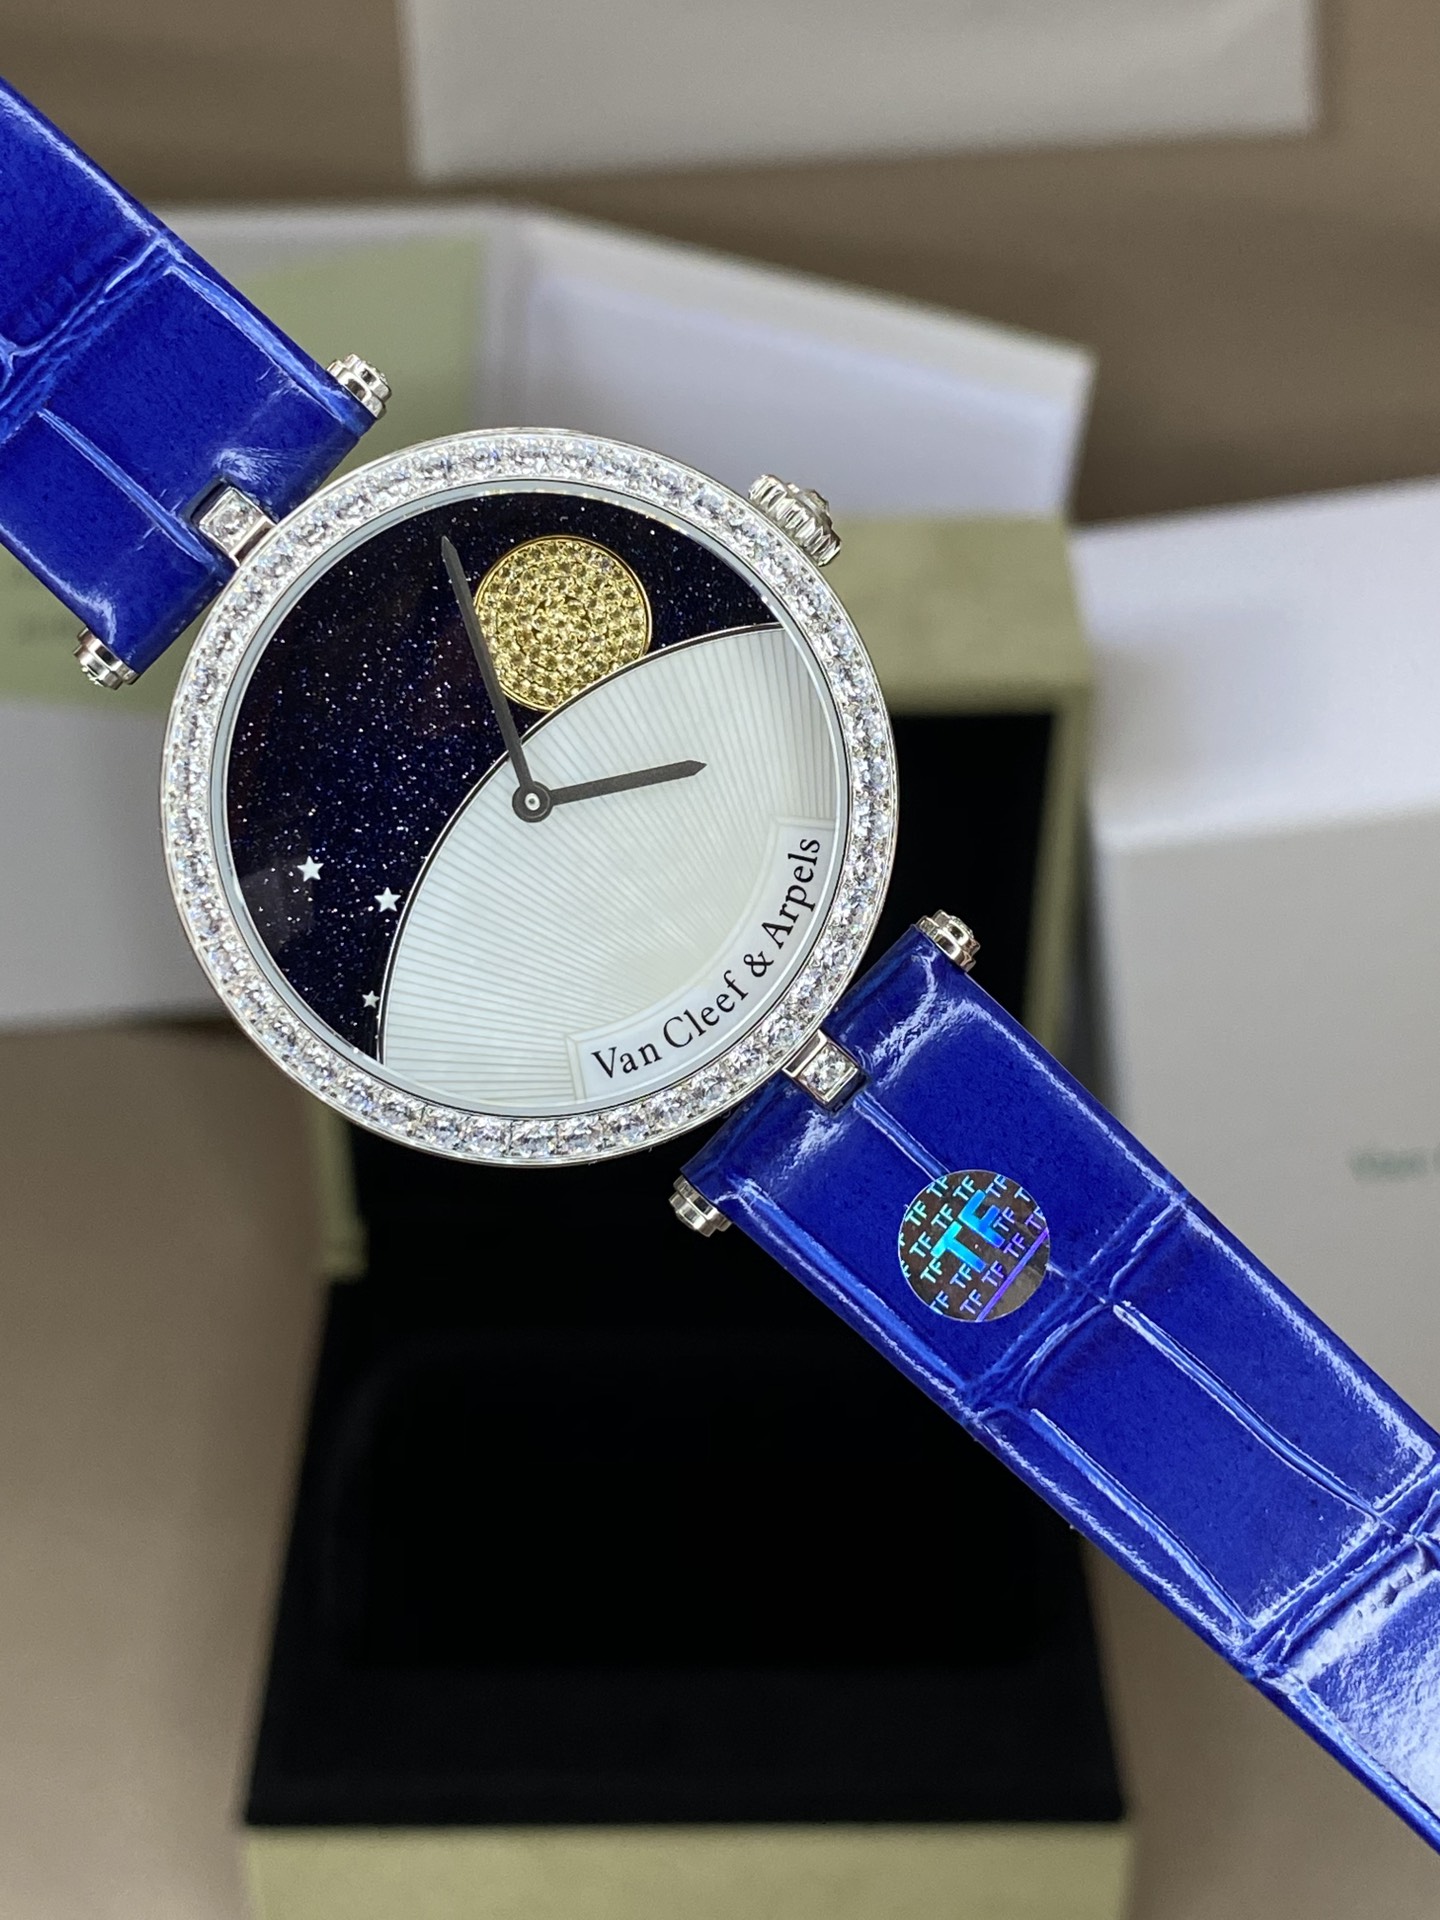 定制版 Van Cleef & 梵克雅宝“TF出品” 正品字面蓝沙宝石代替宇宙星空腕表